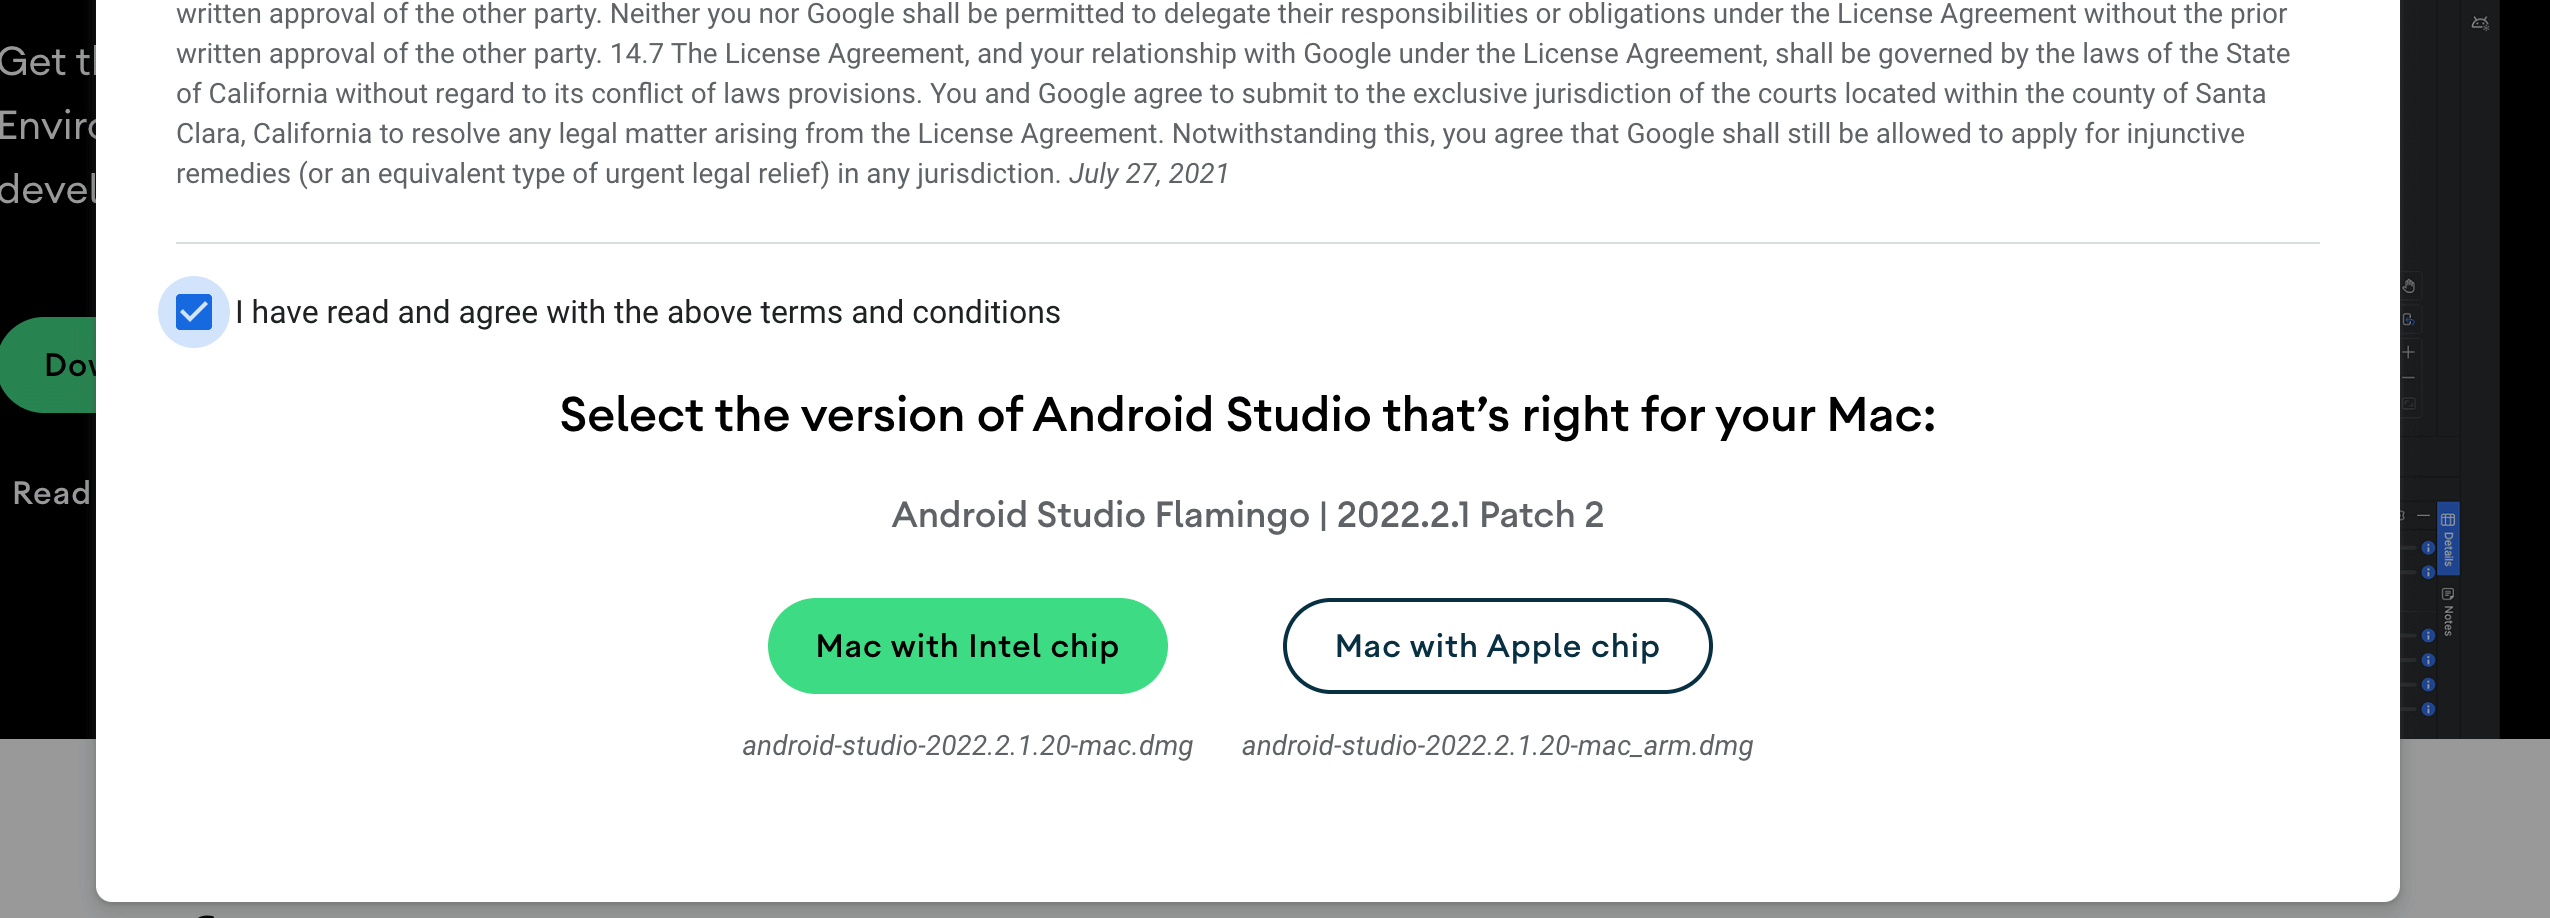 【M1 Mac】Android Studioのインストール方法とセットアップ